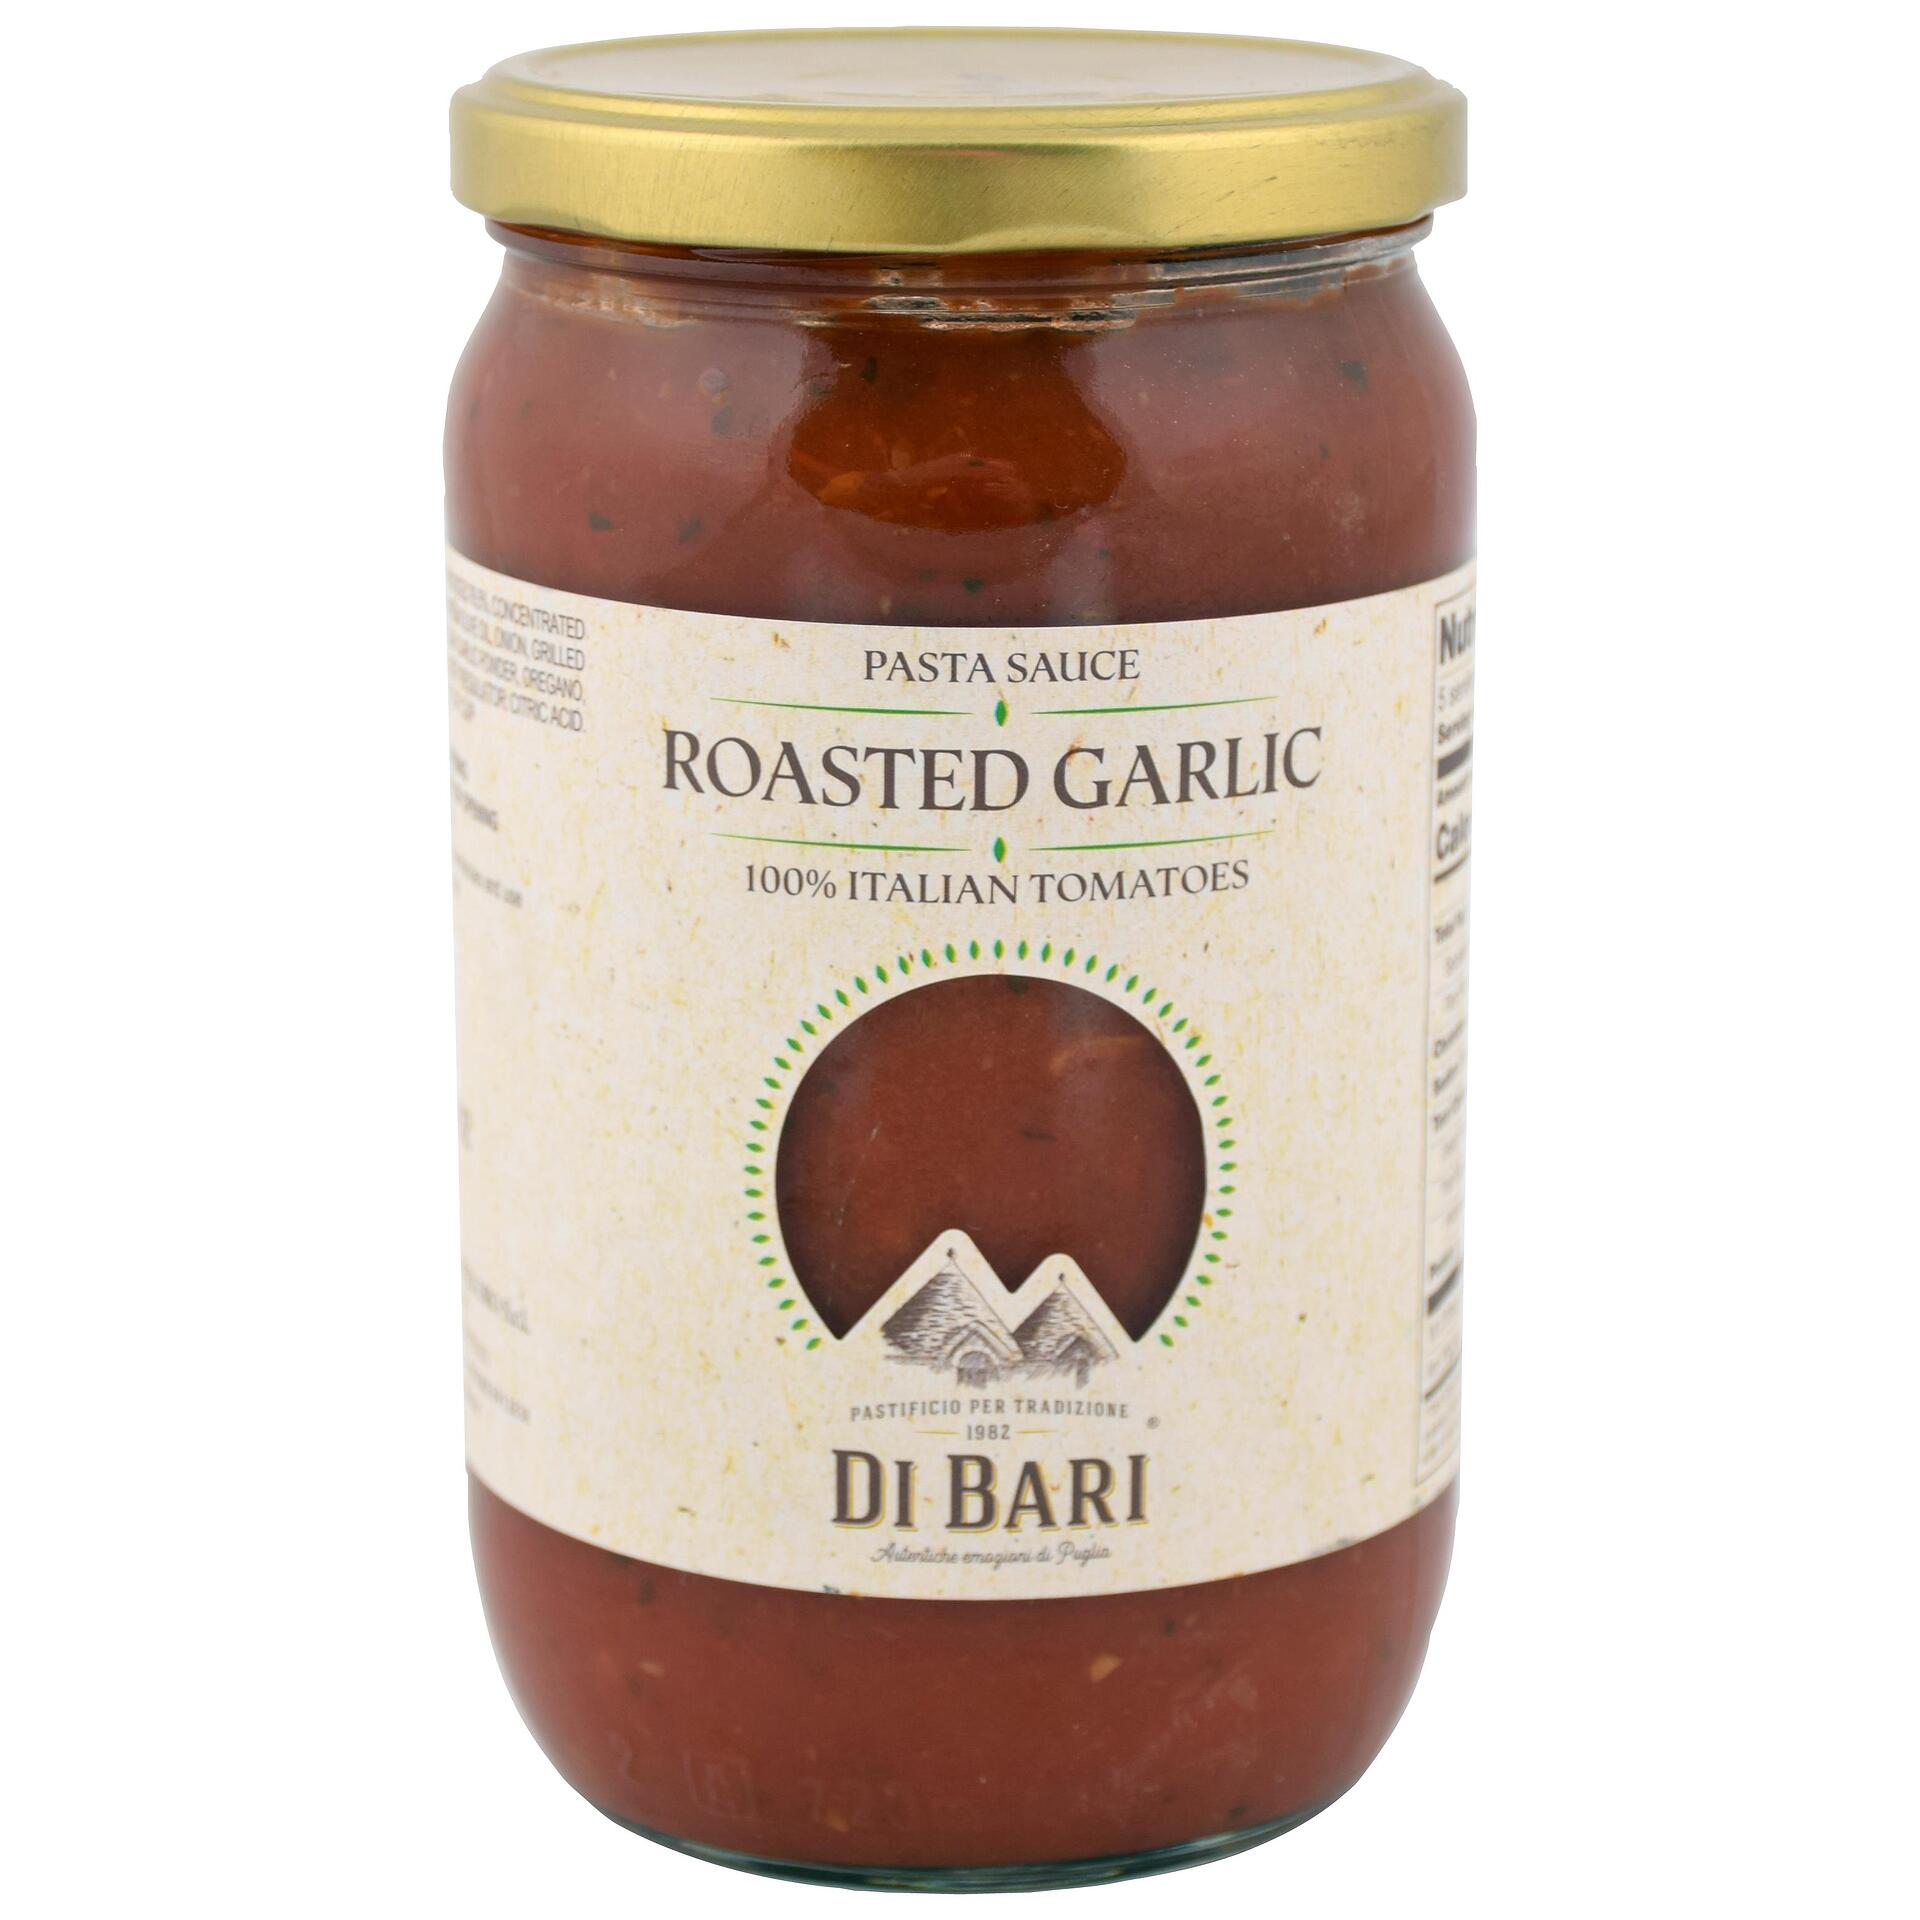 Di Bari Roasted Garlic Tomato Sauce